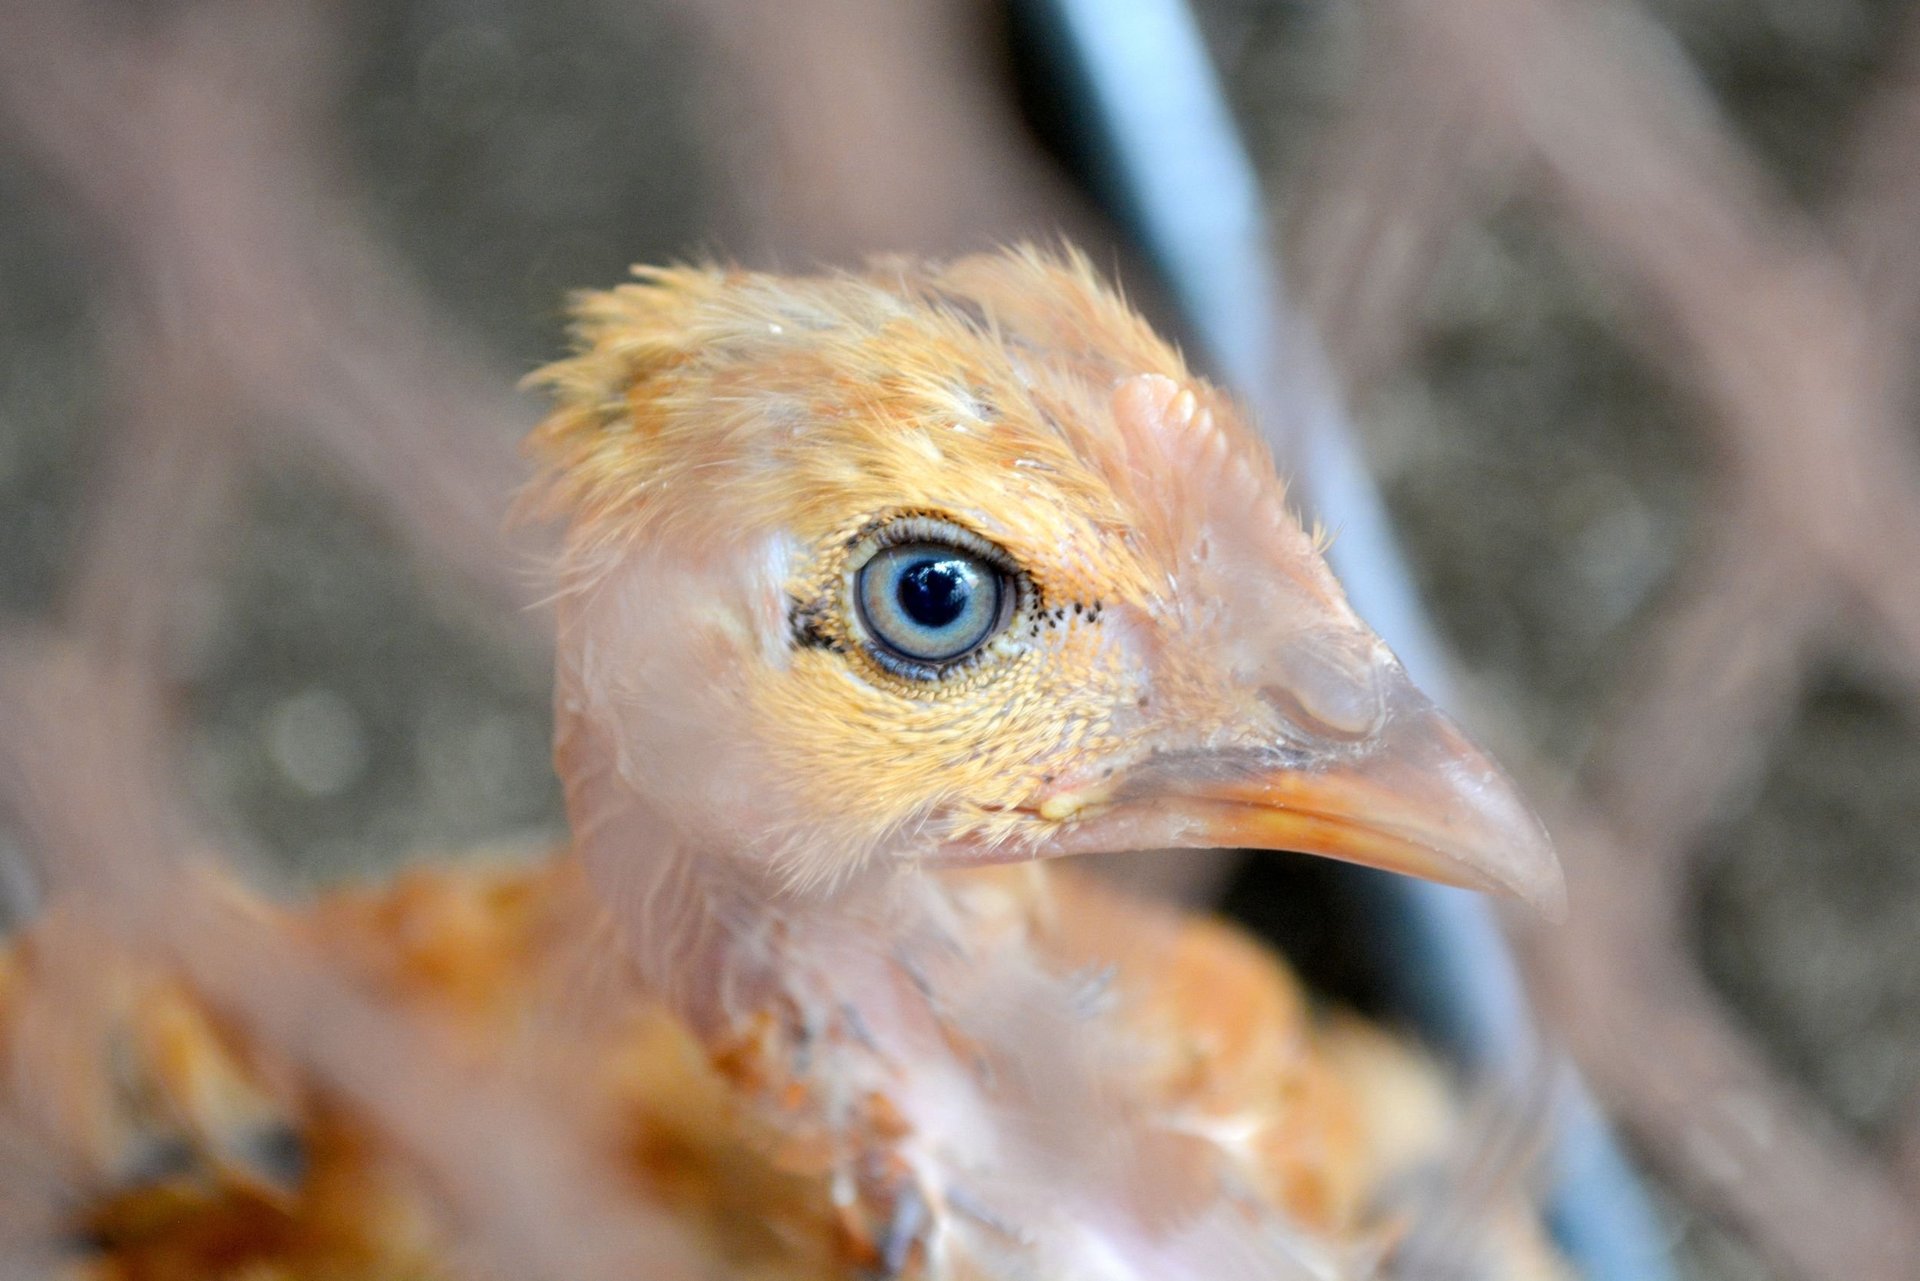 Un pollo mira con curiosidad a través de una jaula. Los pollos son seres sintientes.